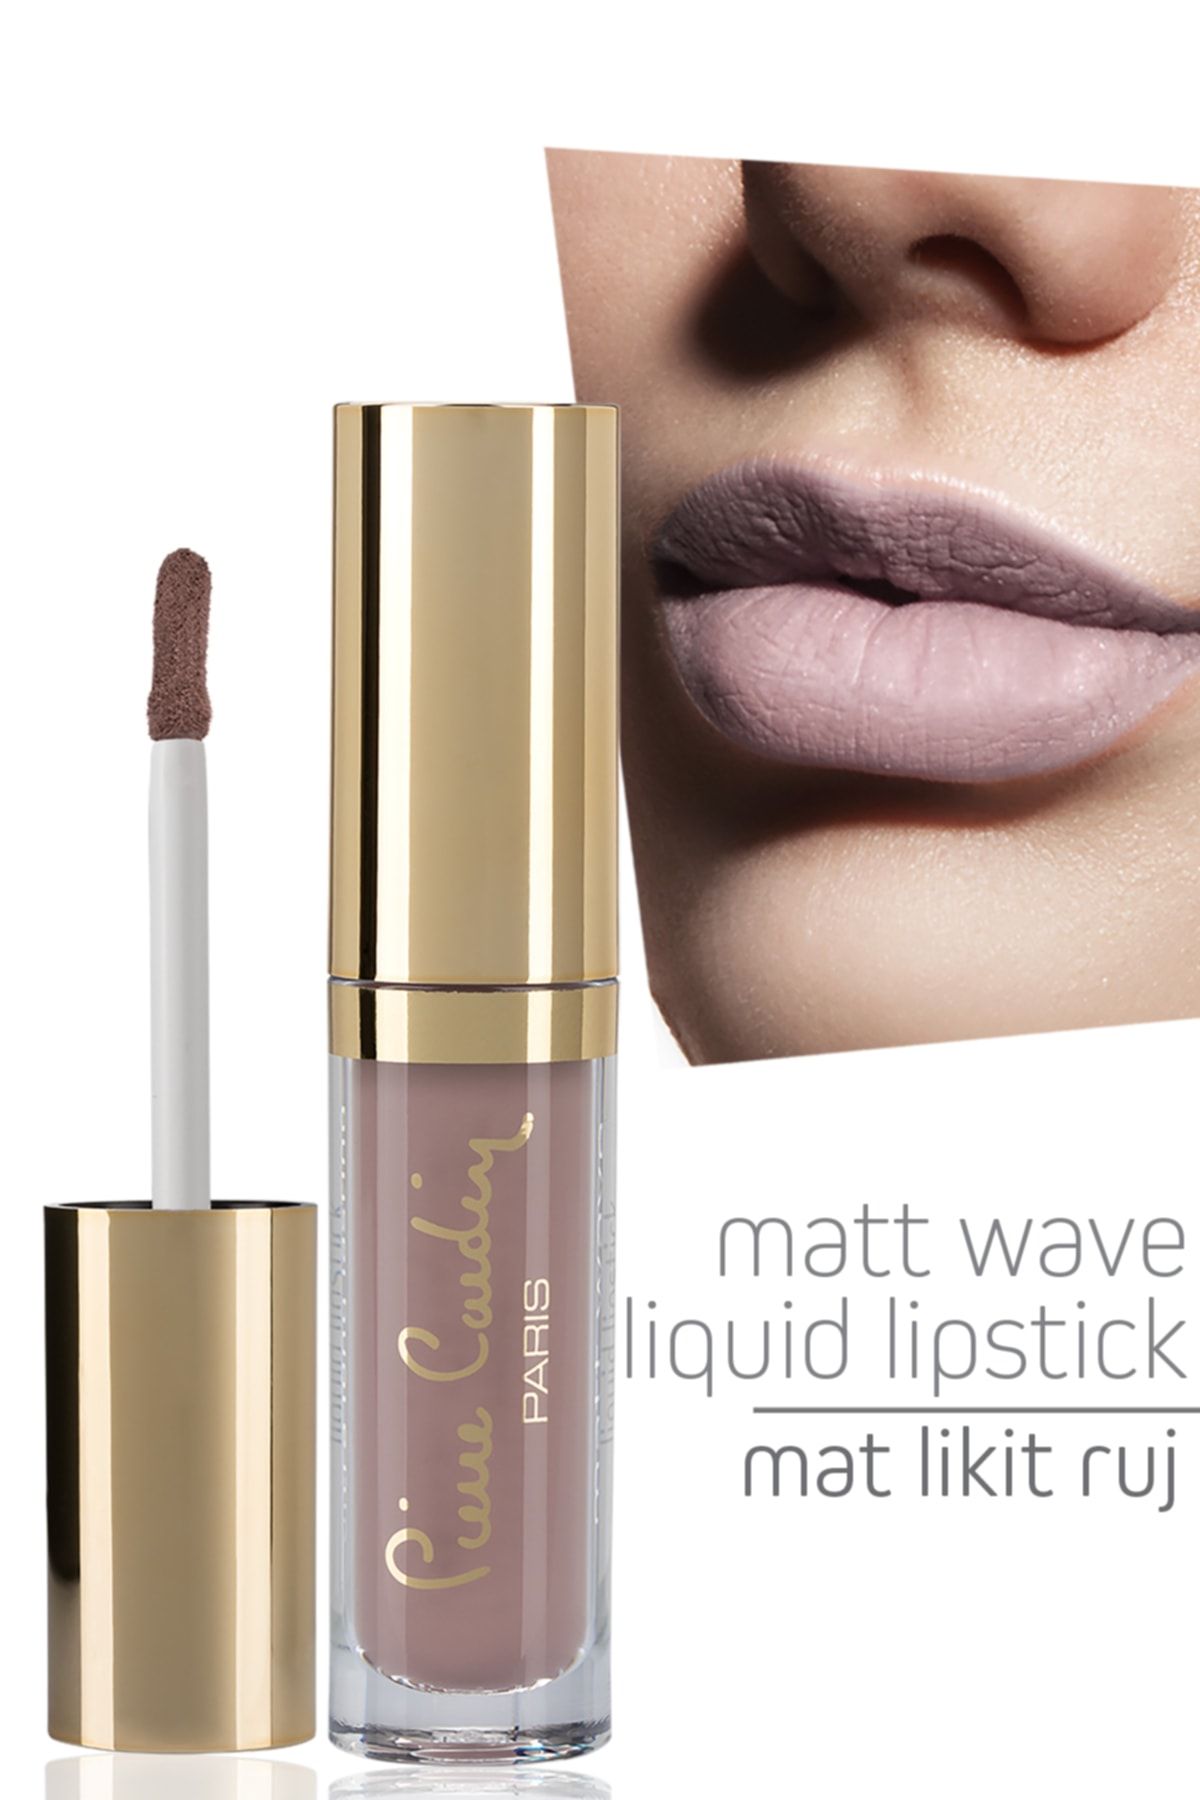 Pierre Cardin Matt Wave Liquid Lipstick – Mat Likit Ruj - Mocha Cream